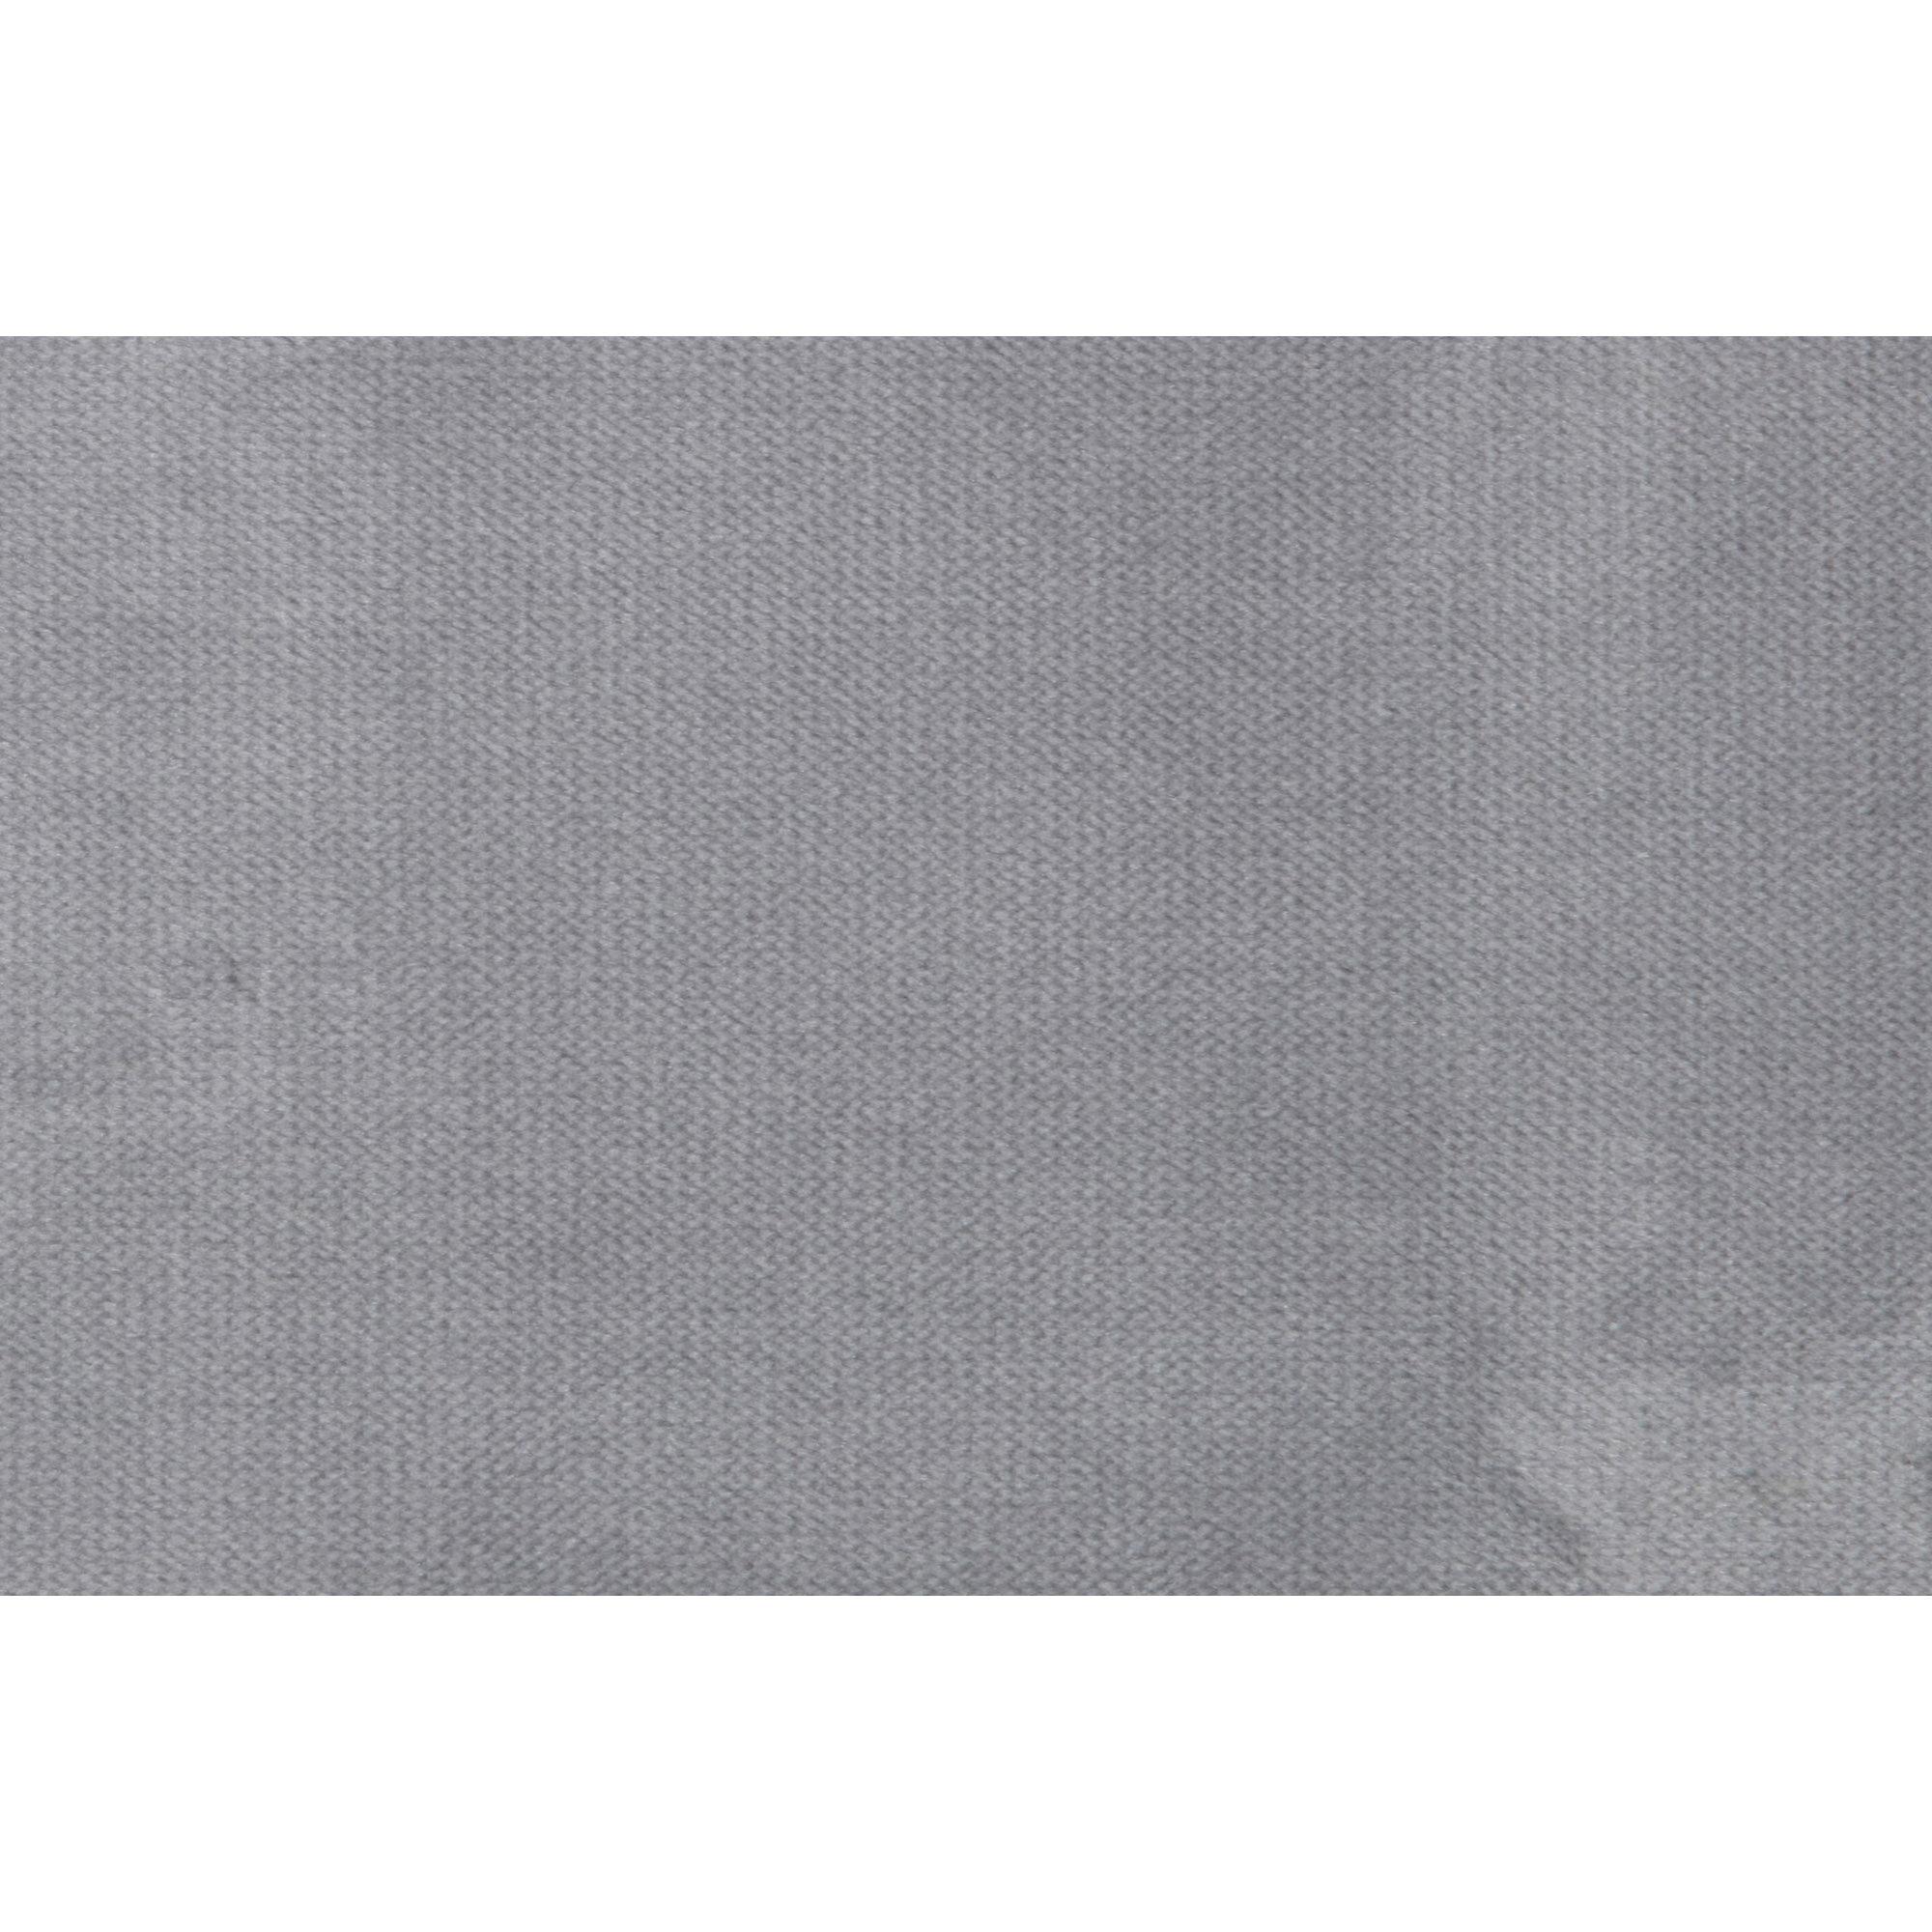  Rodeo Classic Lænestol Velour - Light Grey fra BePureHome i Velour (Varenr: 800888-149)